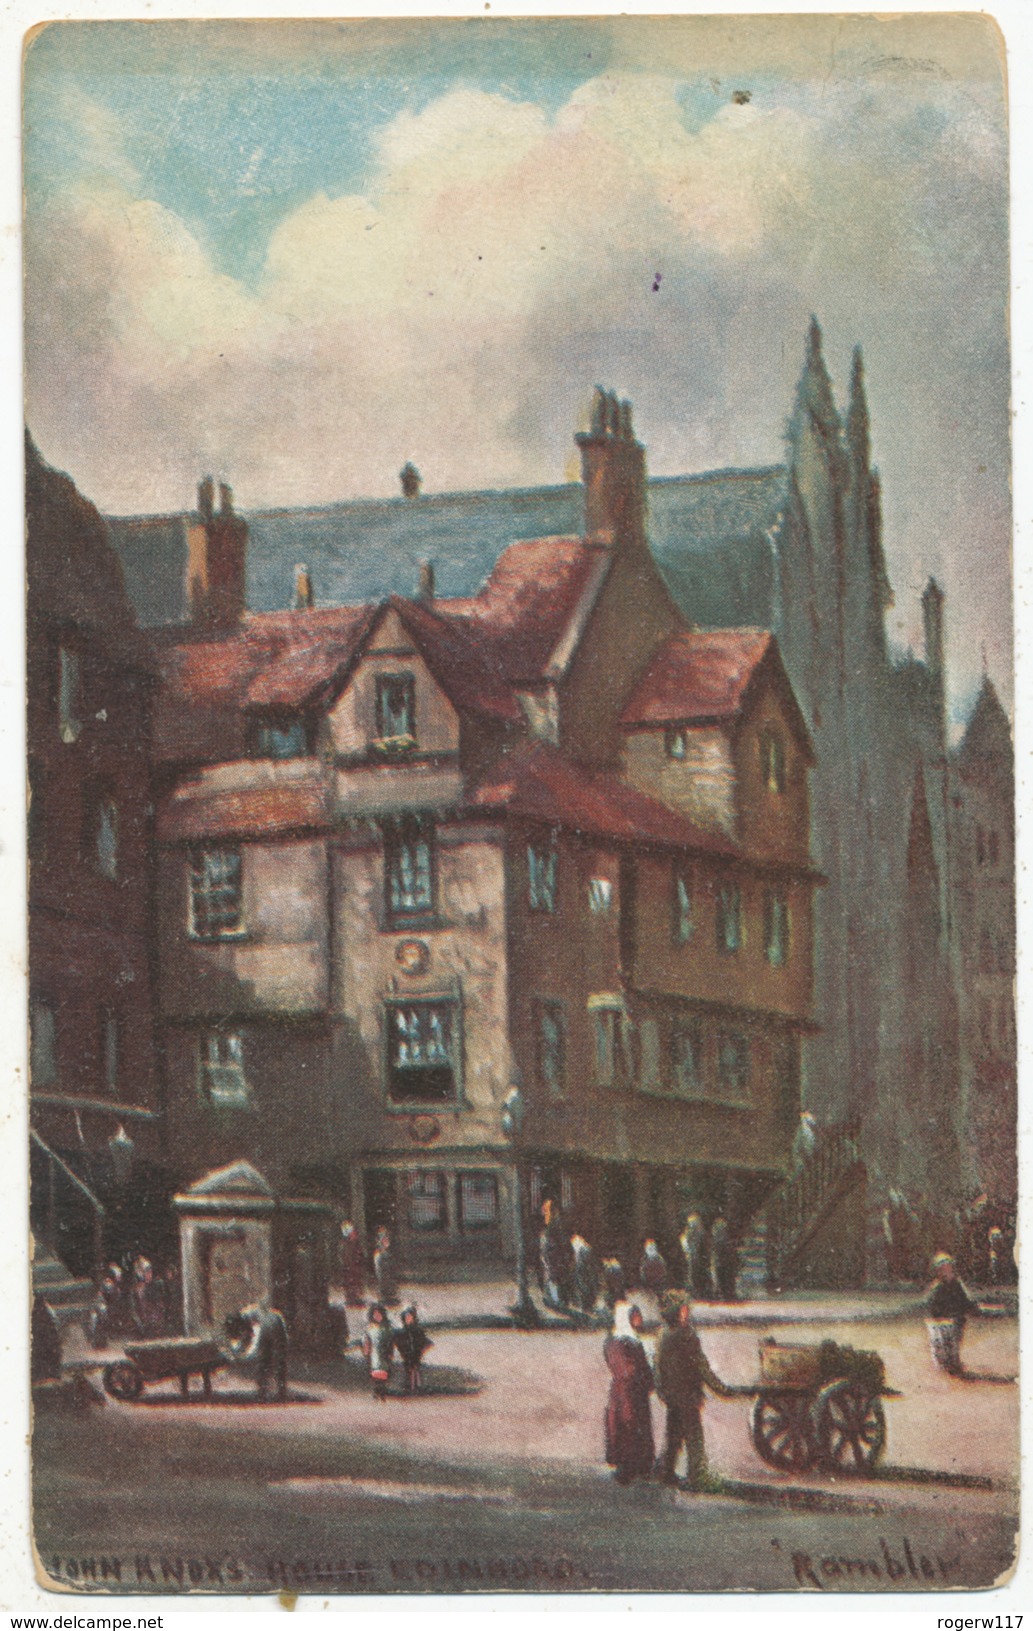 John Knox's House, Edinburgh - Midlothian/ Edinburgh